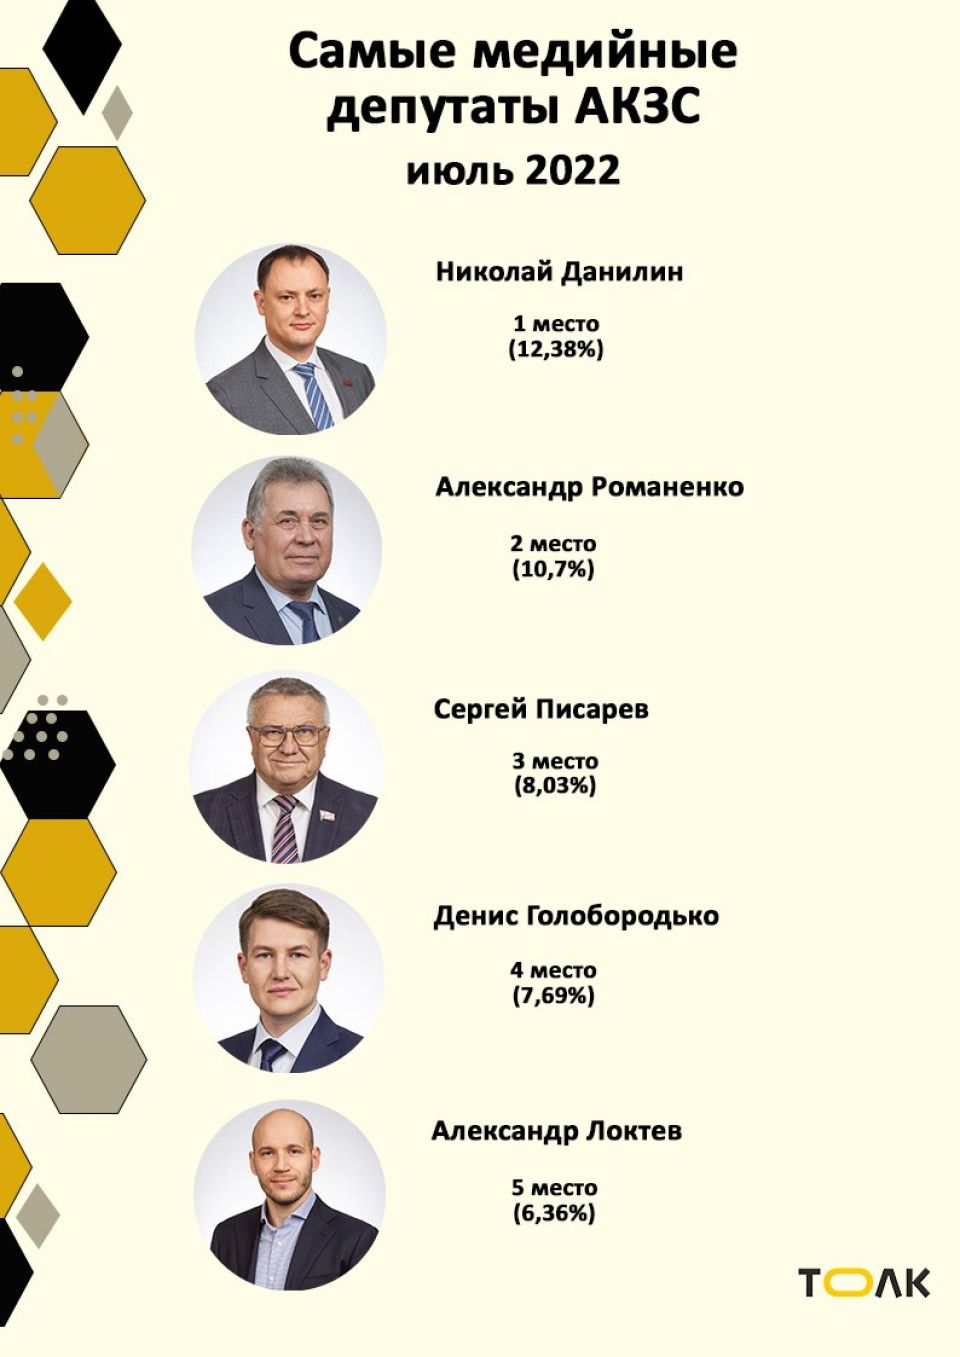 Рейтинг медийности депутатов АКЗС в июле 2022 года